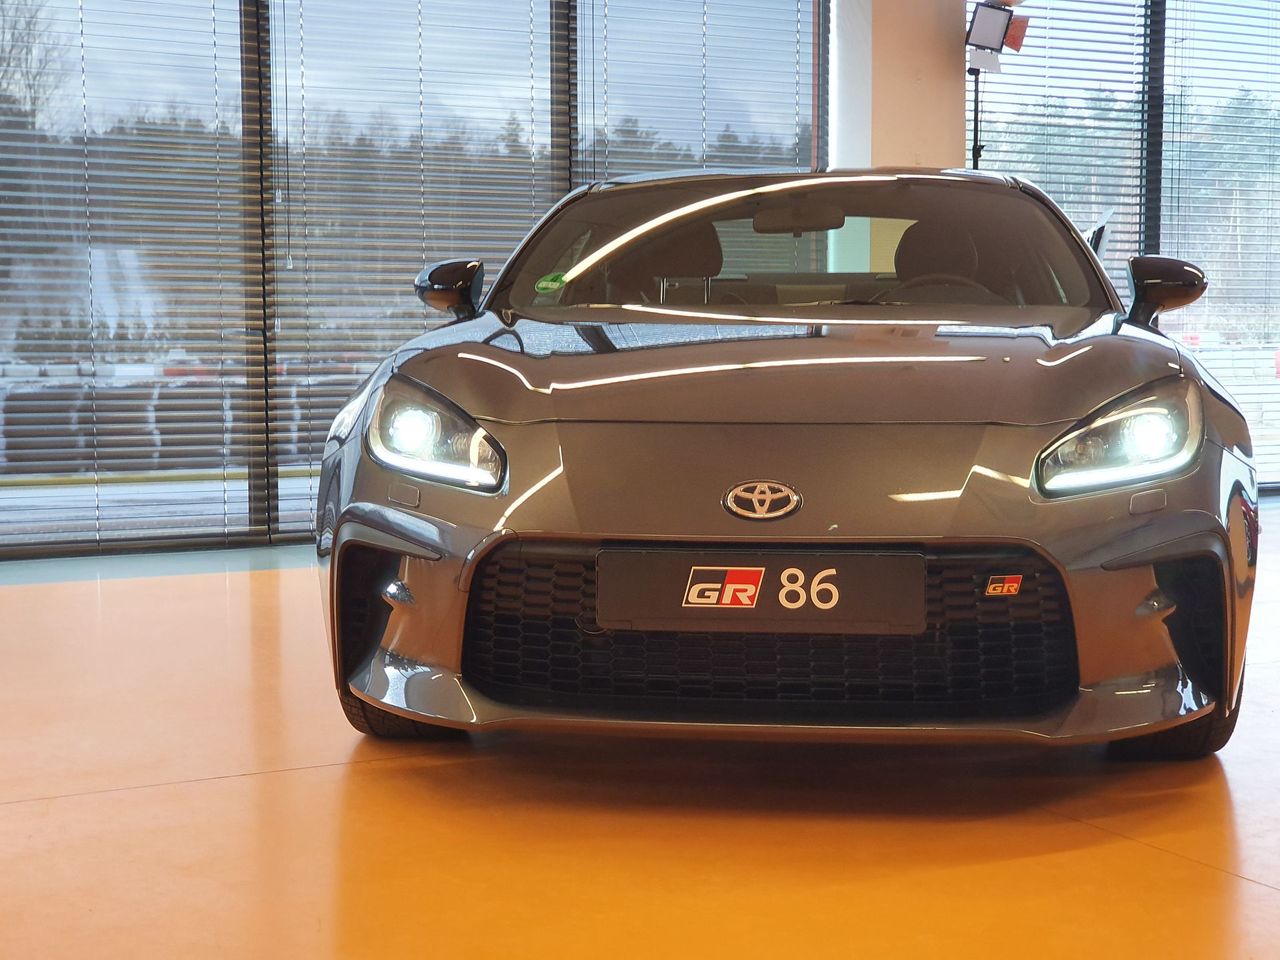 Toyota GR86 oficjalnie wyceniona. Nie jest tanio, a zainteresowani muszą się spieszyć